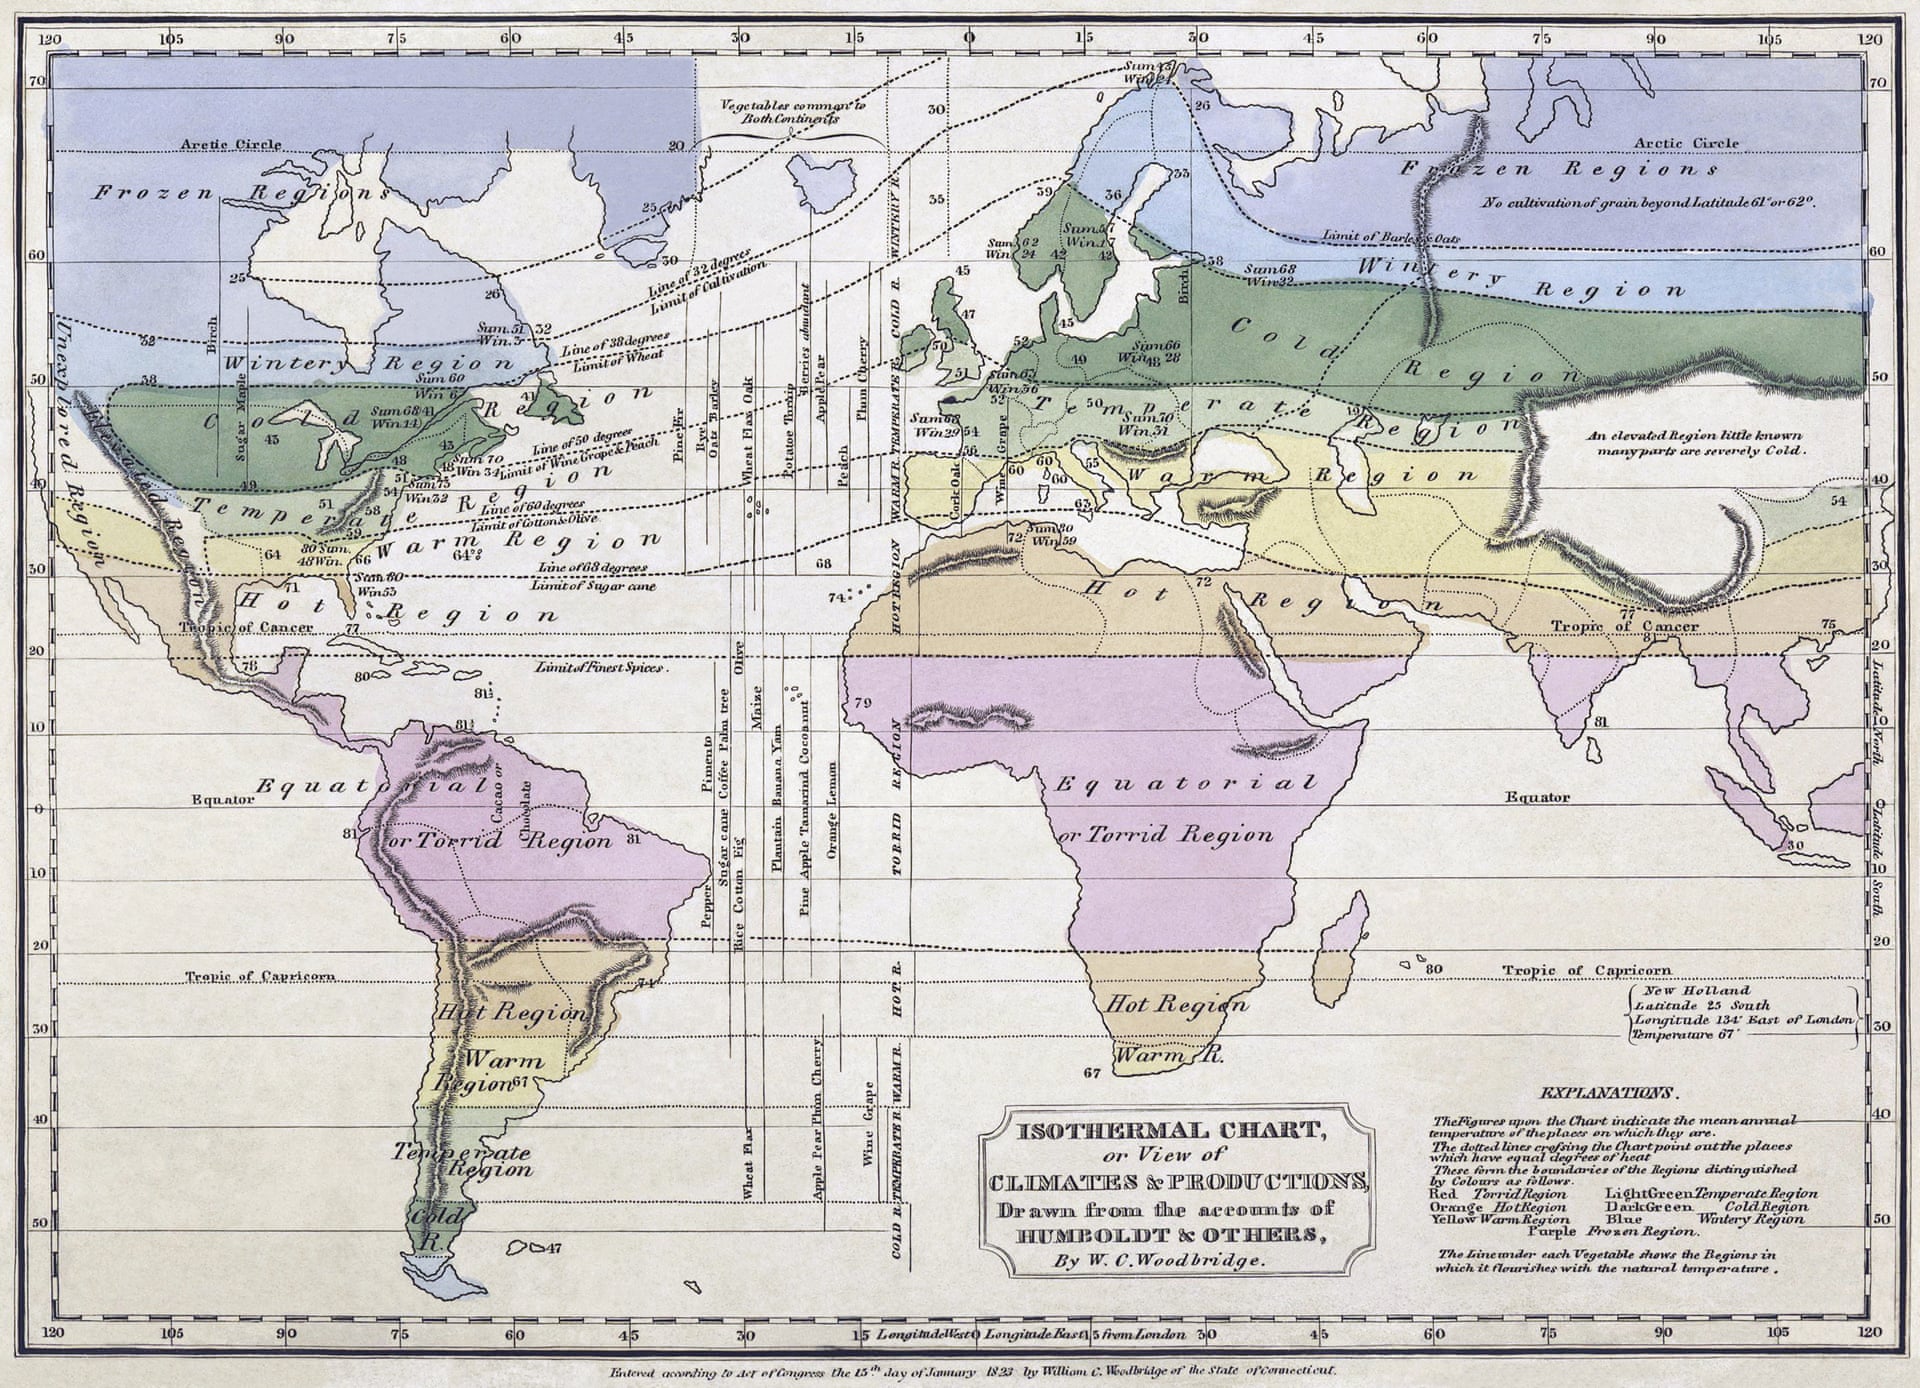 Bản đồ đẳng nhiệt toàn cầu sử dụng dữ liệu thu thập được bởi Humboldt, dựng bởi William C Woodbridge, năm 1823. Nguồn: Alexander von Humboldt/W.C. Woodbridge